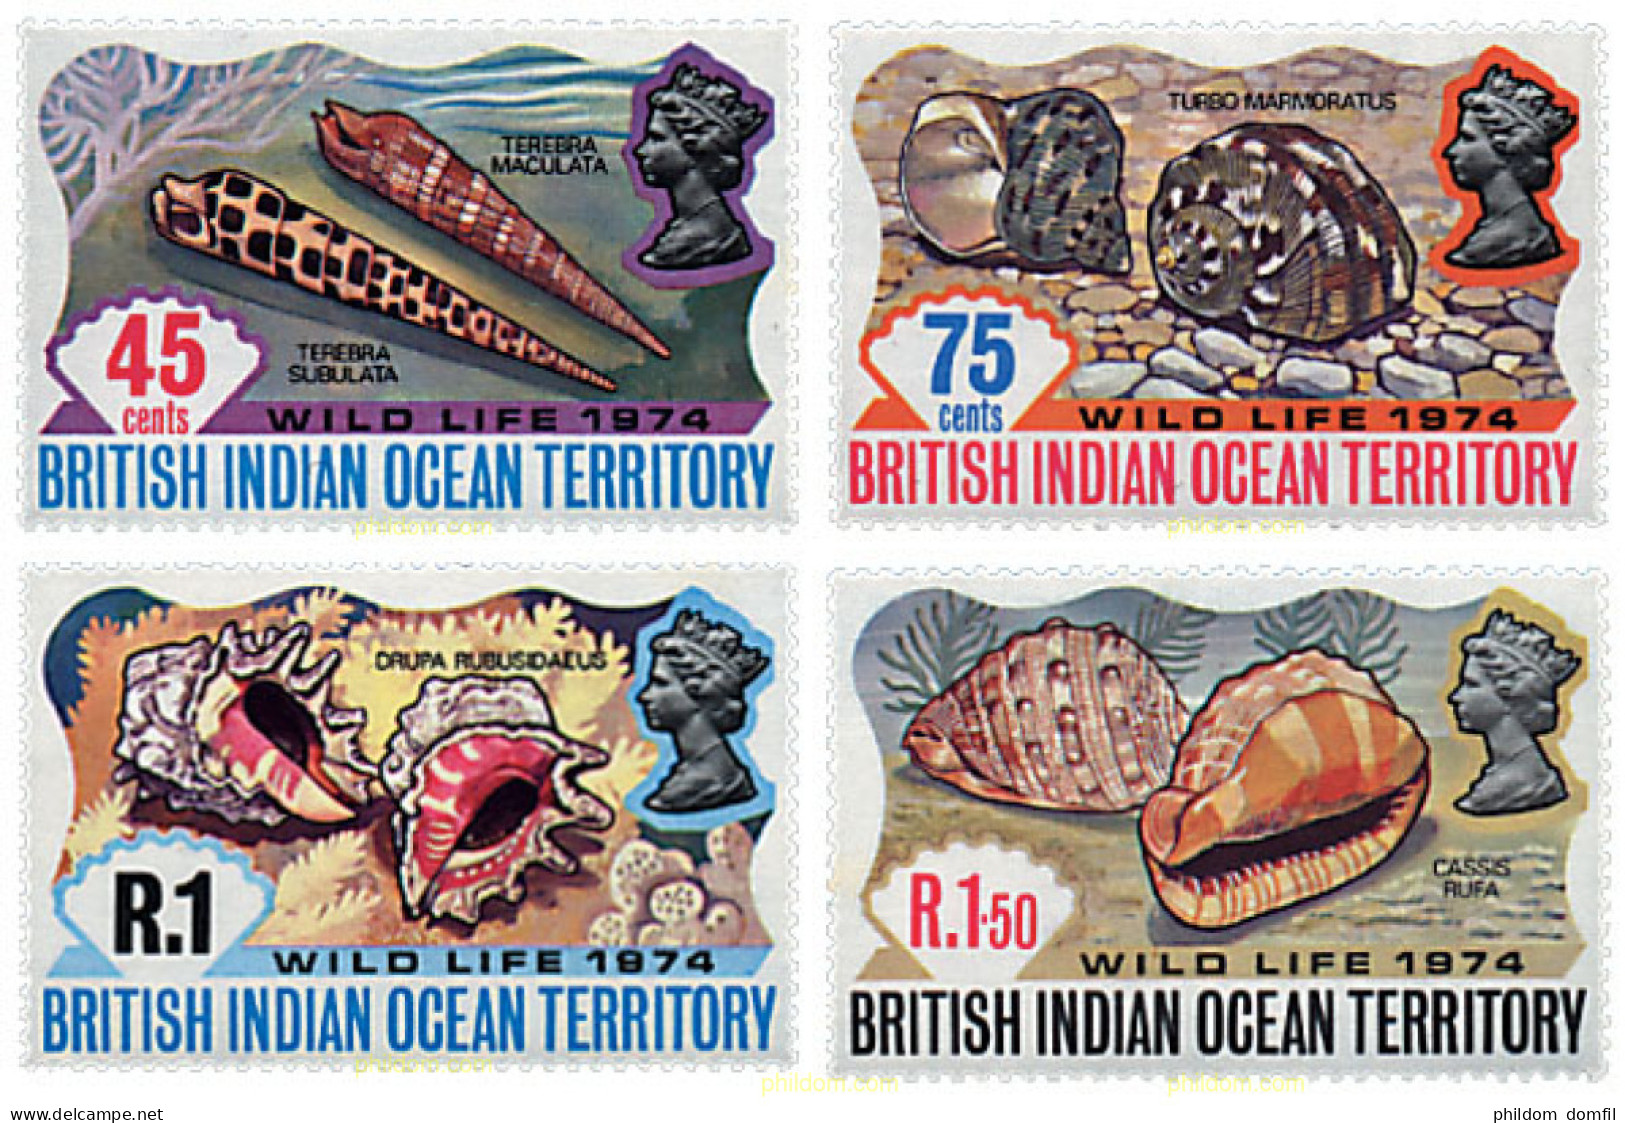 72854 MNH OCEANO INDICO BRITANICO 1974 CONCHAS - British Indian Ocean Territory (BIOT)